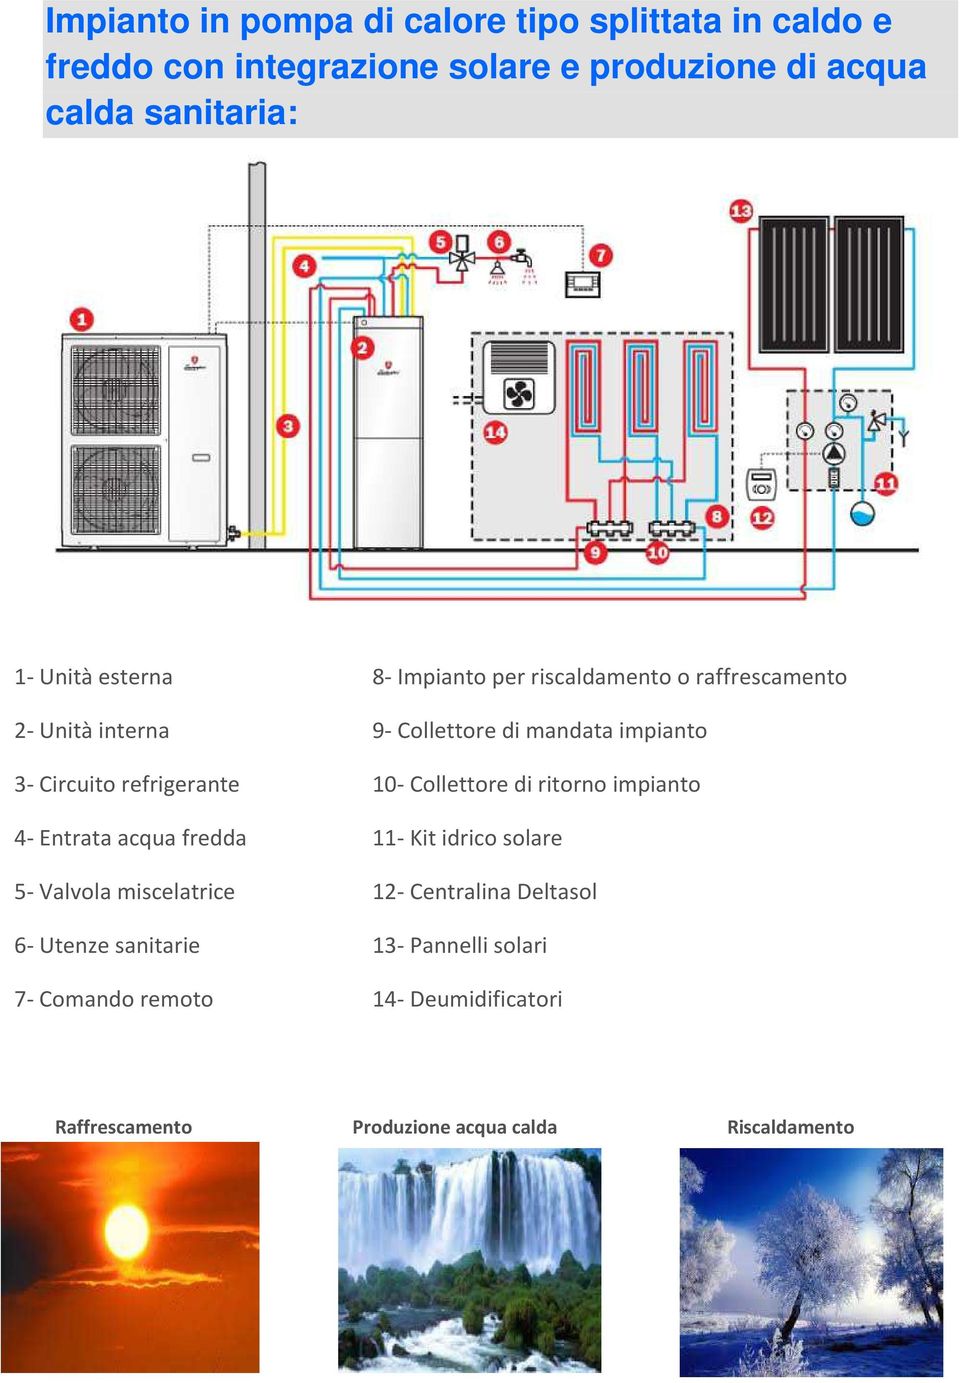 refrigerante 10- Collettore di ritorno impianto 4- Entrata acqua fredda 11- Kit idrico solare 5- Valvola miscelatrice 12-